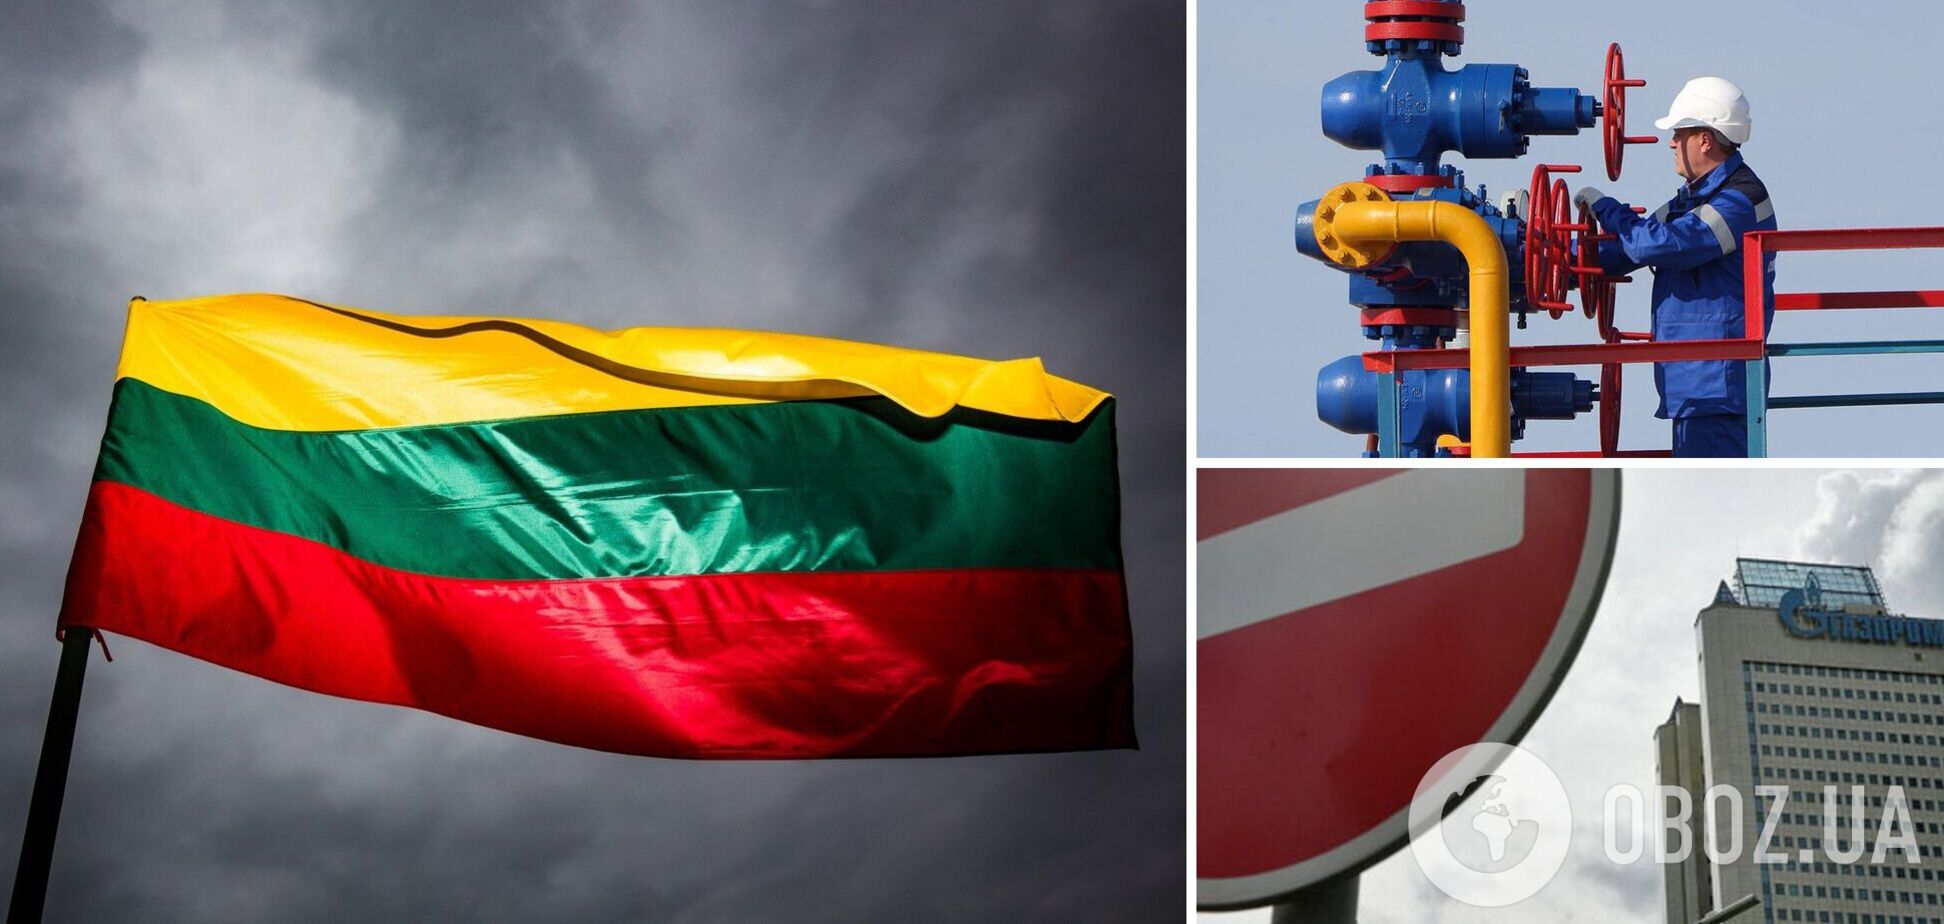 Литва теперь не просто не покупает газ у РФ, но и запретила его транзит в любом направлении, кроме Калининграда